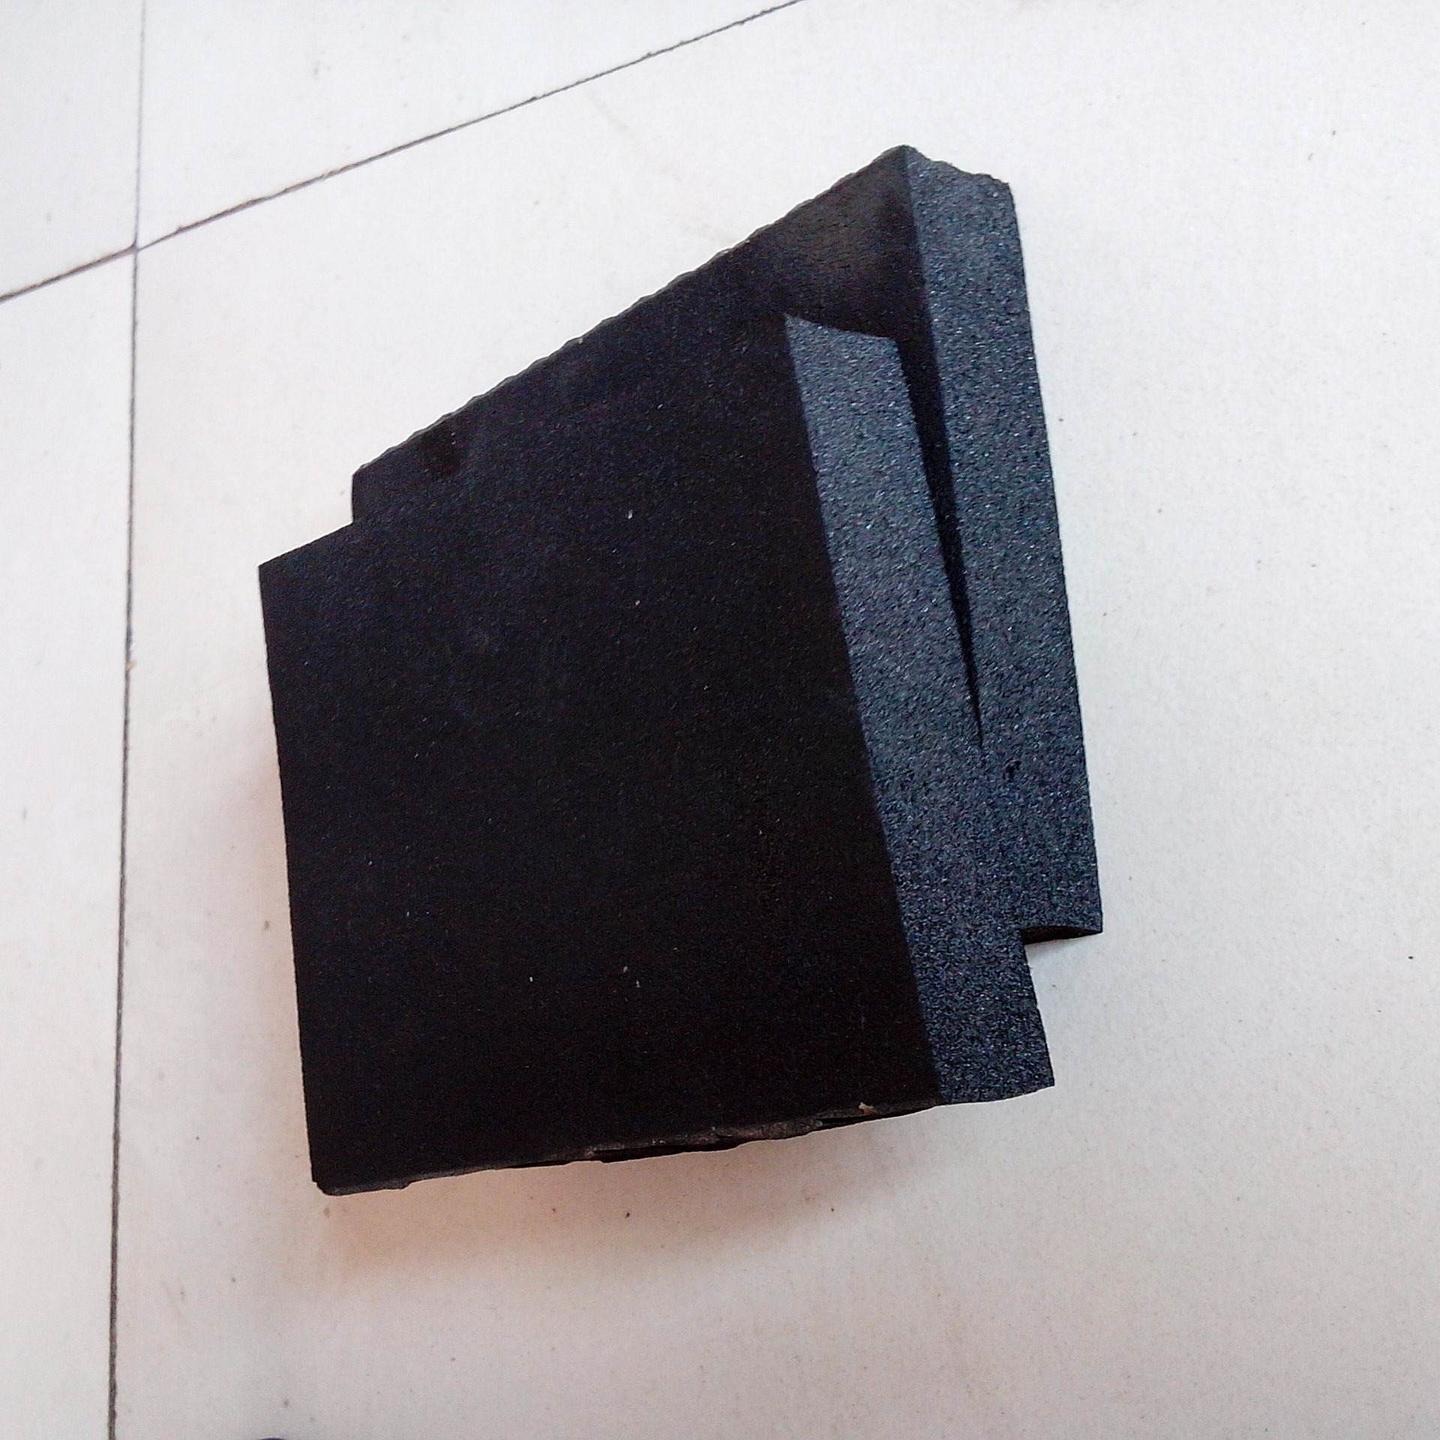 B1级橡塑板 橡塑海绵板 铝箔橡塑板 隔音橡塑板 单面铝箔橡塑板价格 屋面隔音 中维